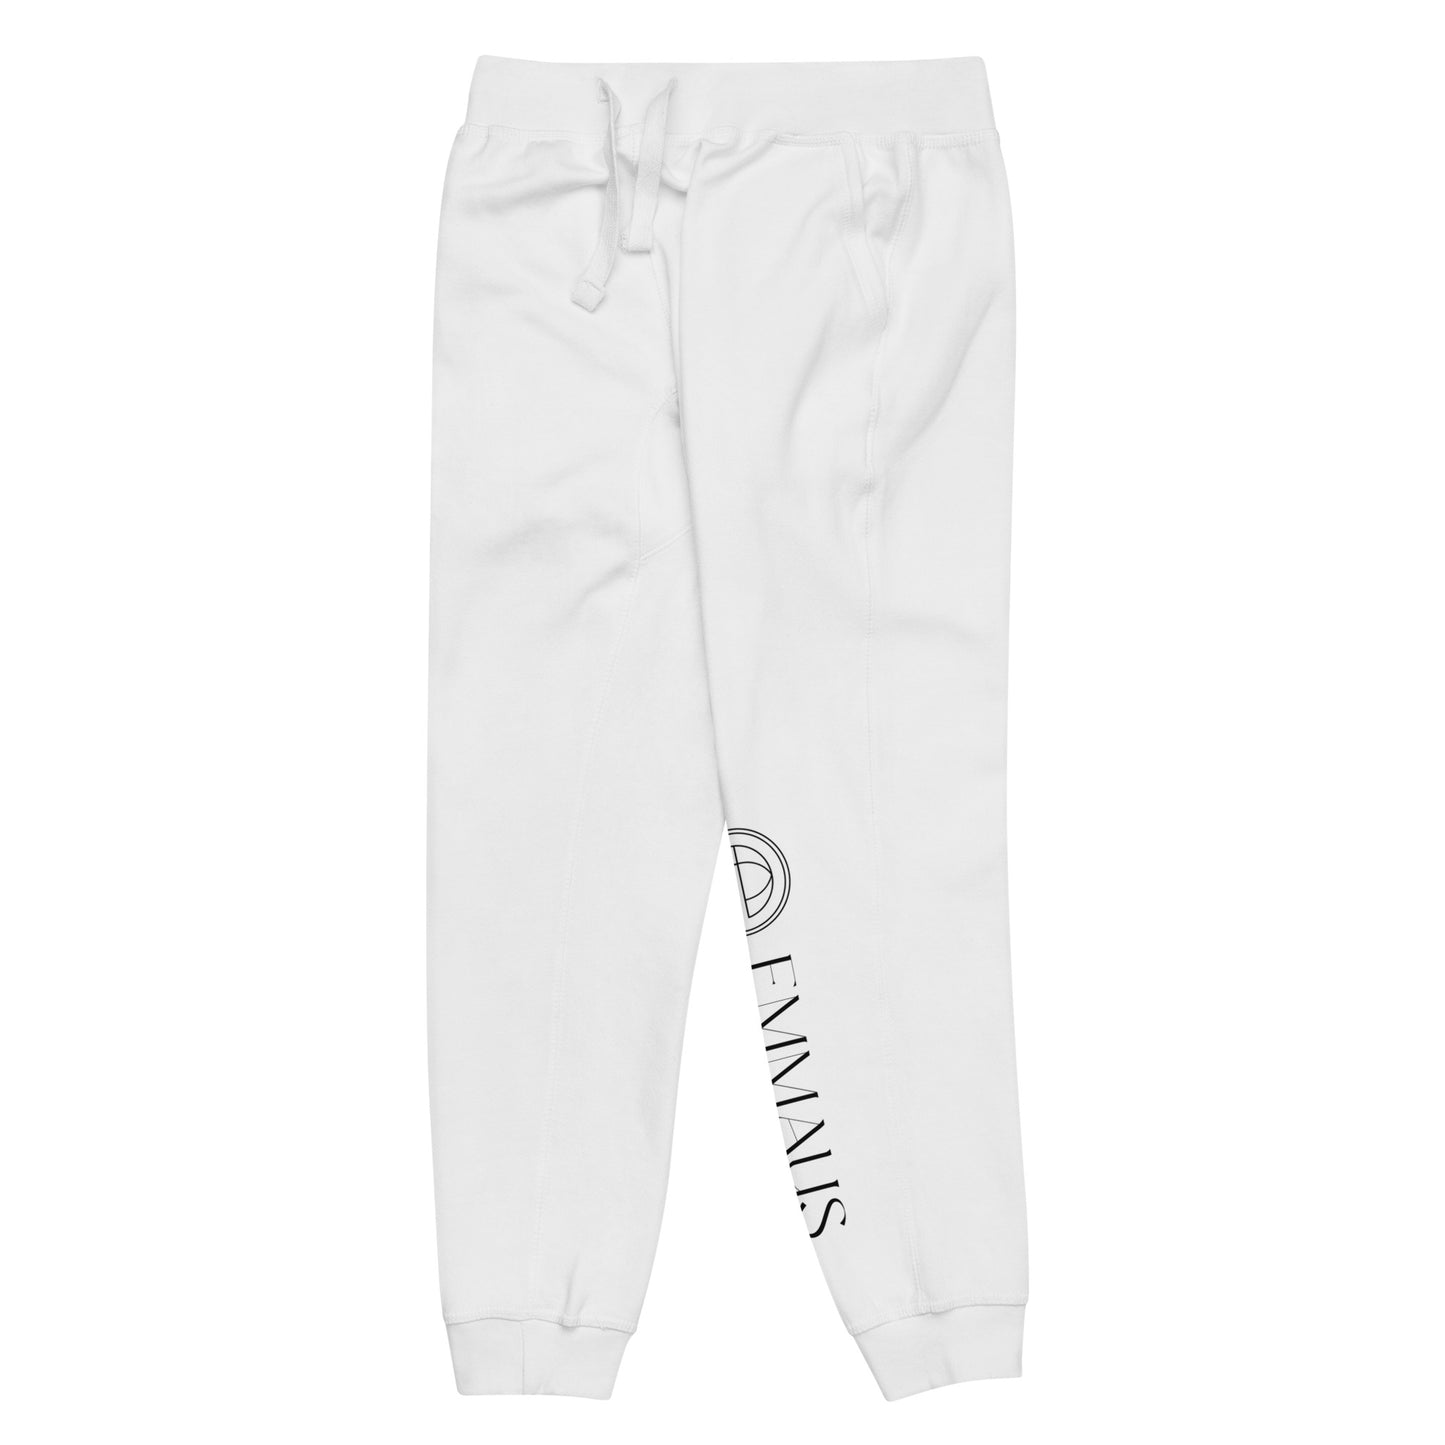 Emmaus Unisex Fleece Sweatpants (4 Colors)